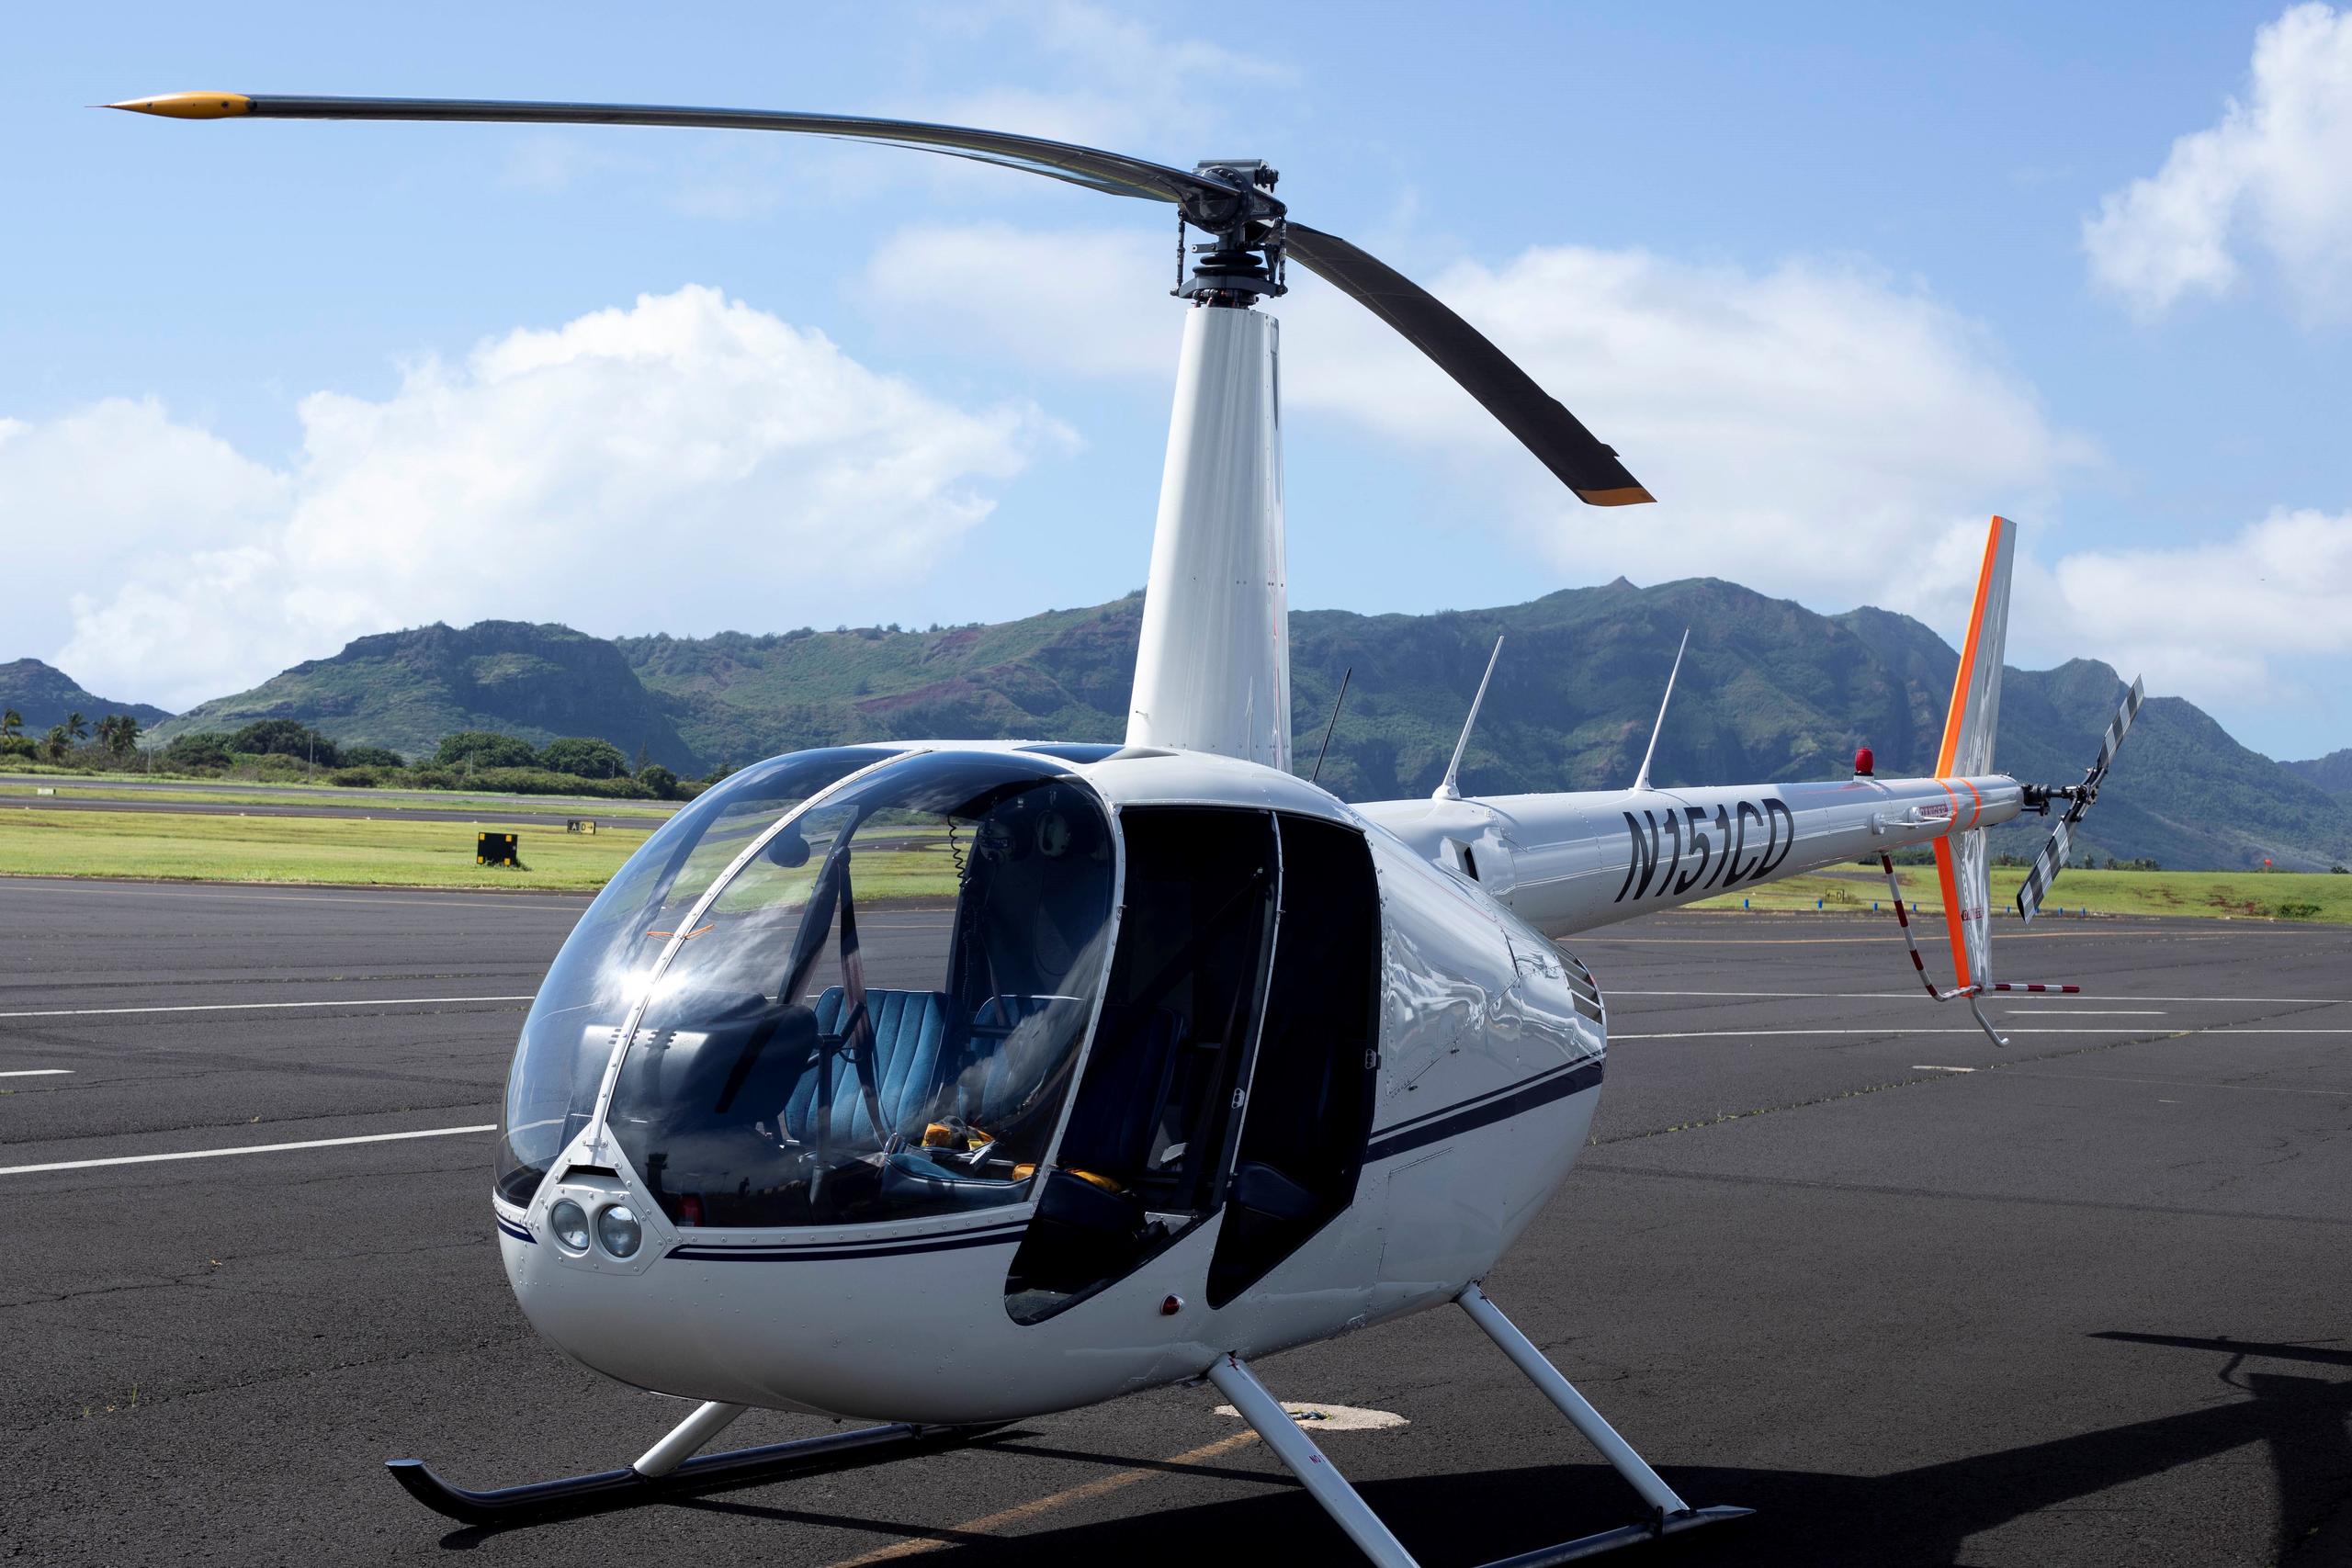 Kauai Helicopter Flight Na Pali Coast Waimea Canyon